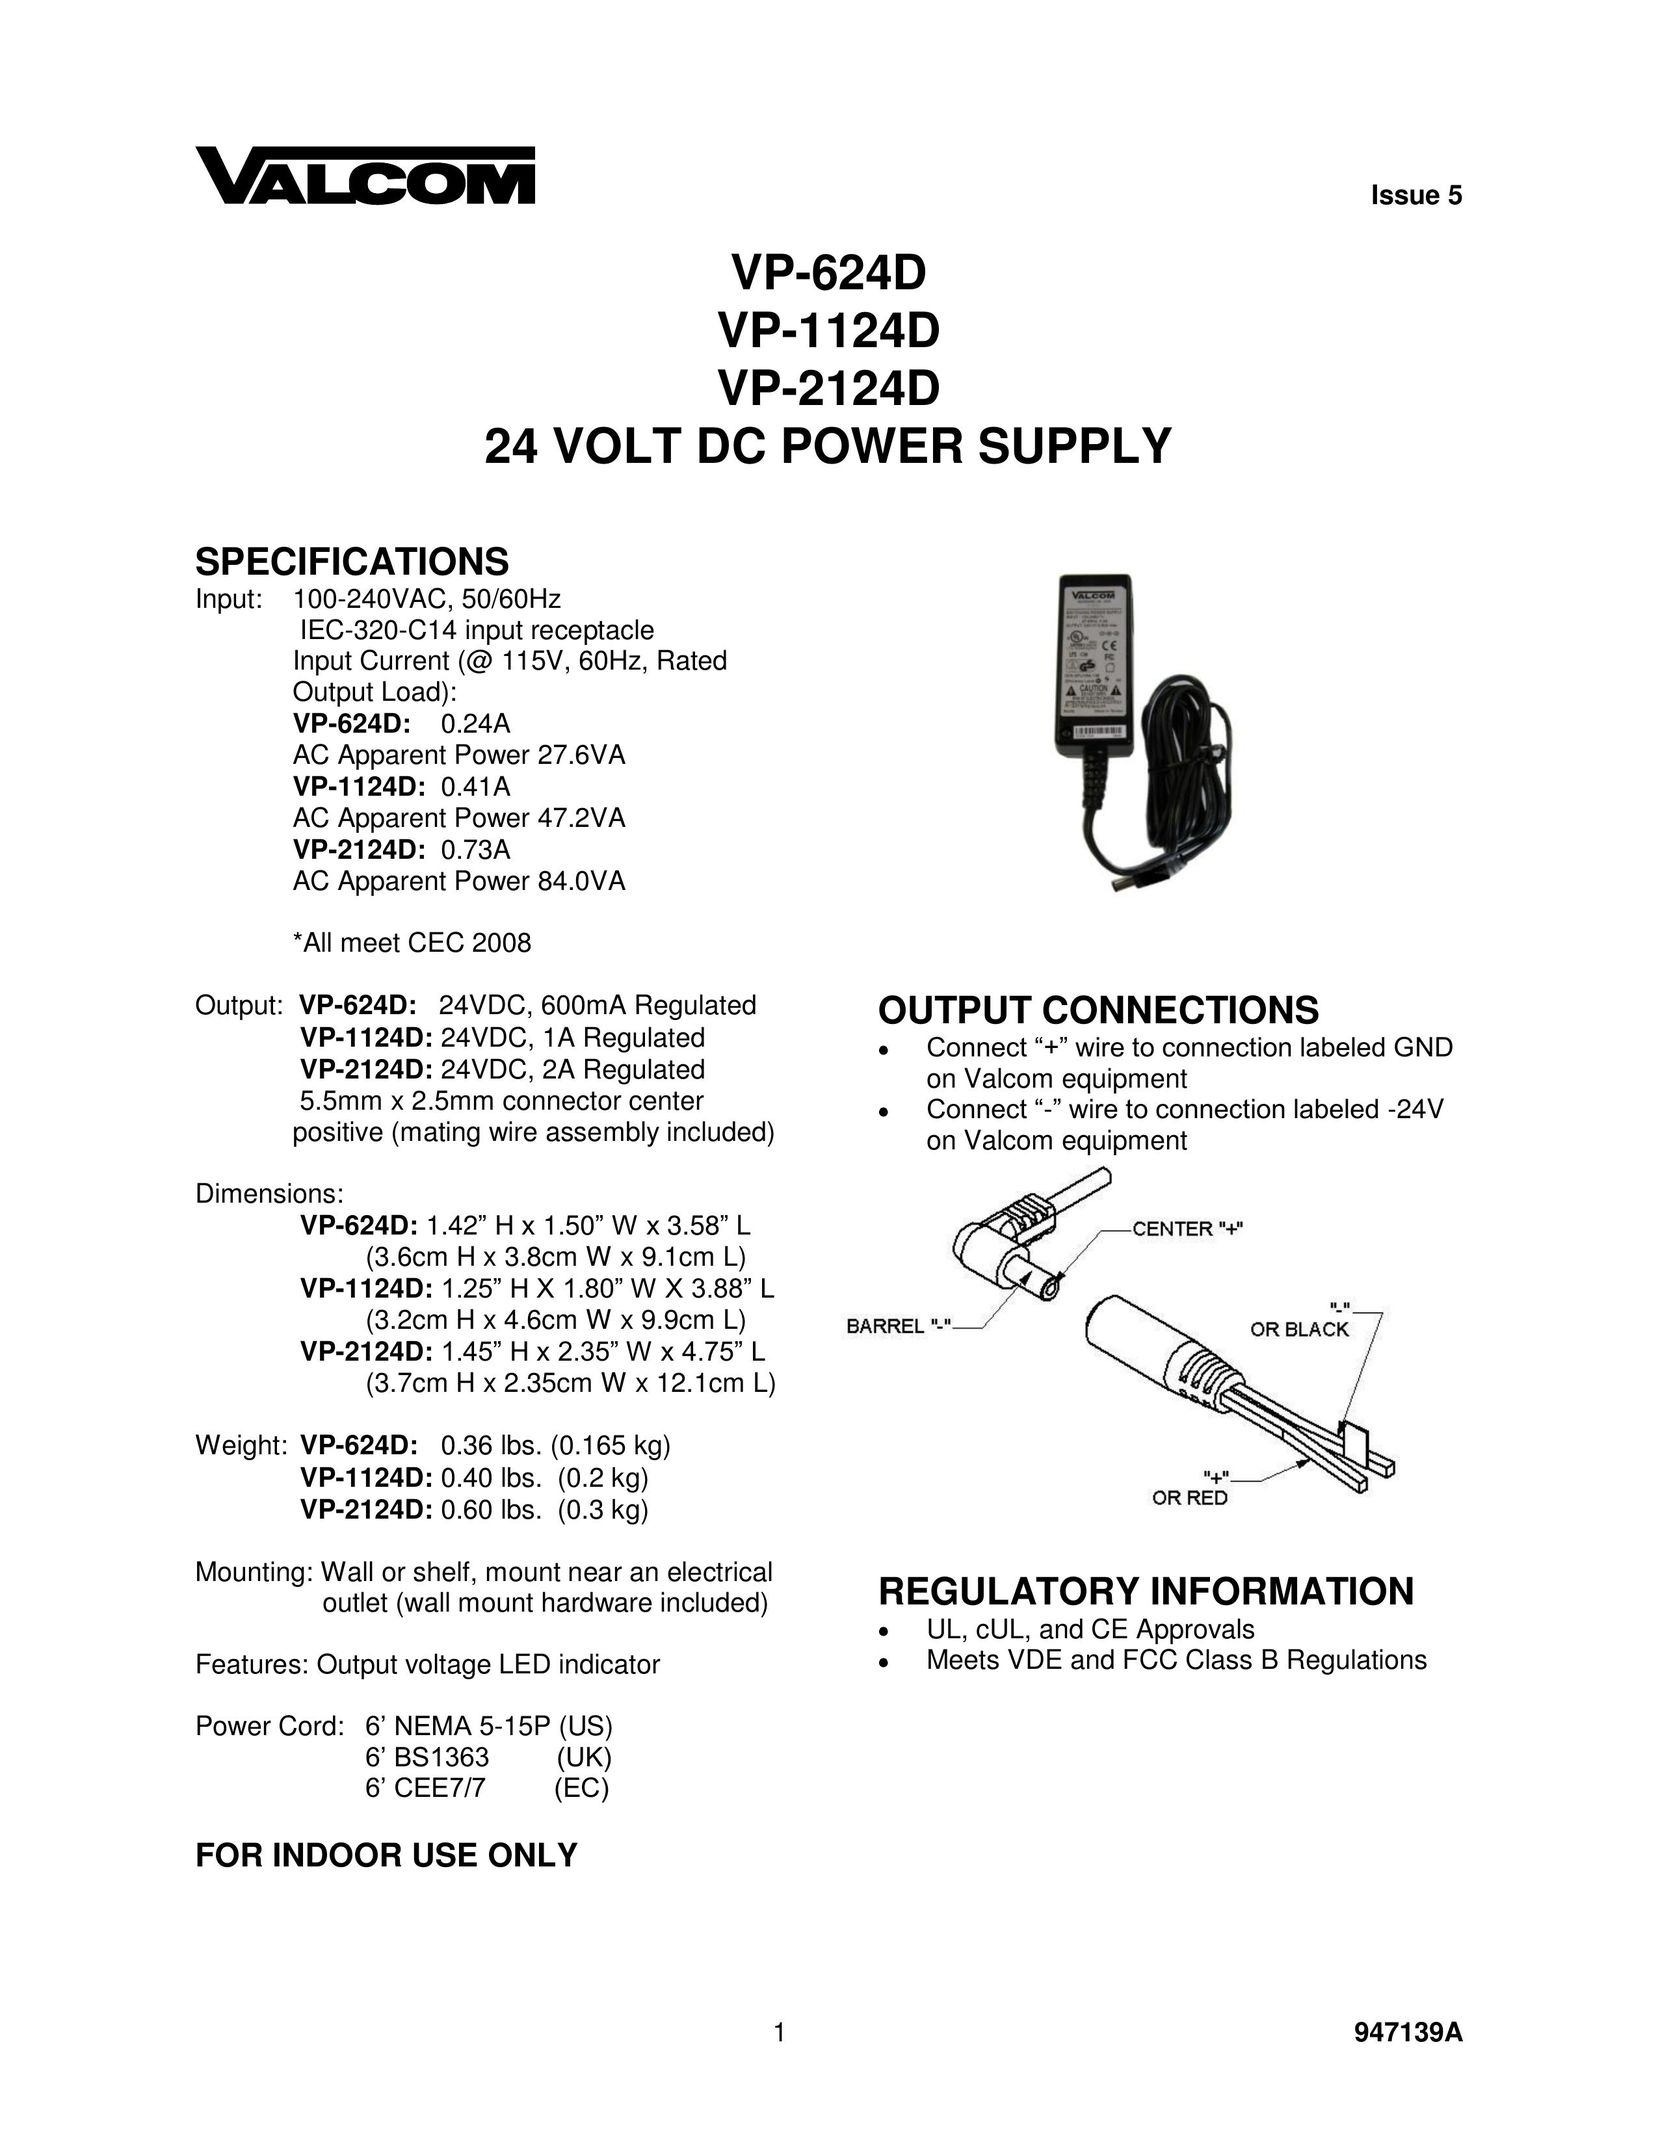 Valcom VP-624D Power Supply User Manual